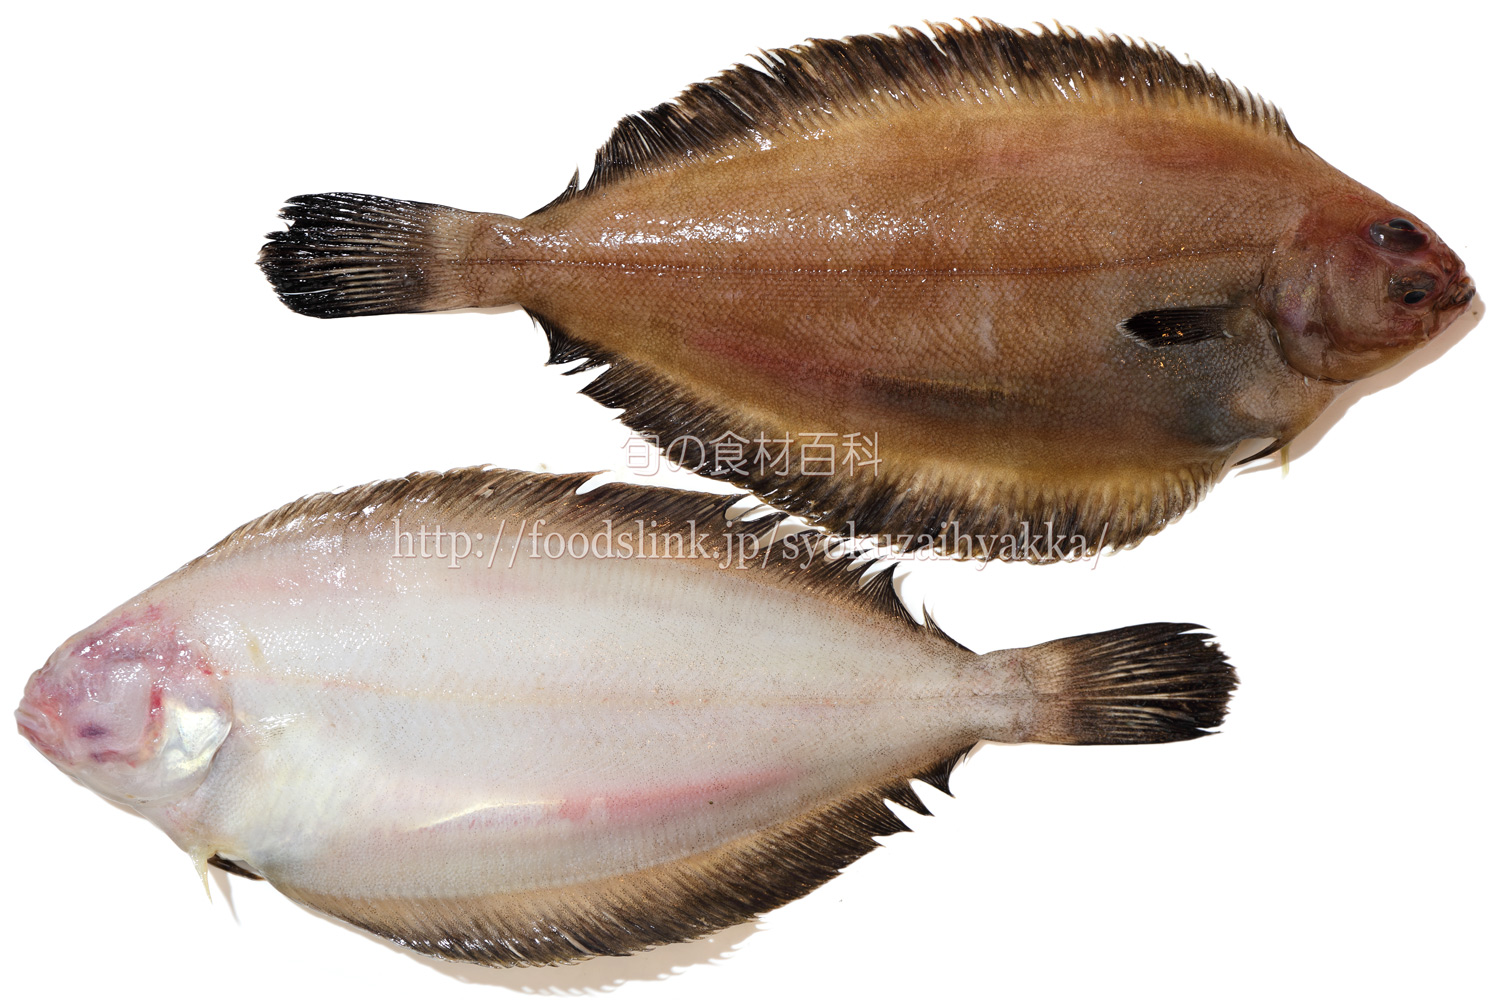 ヒレグロ ヤマガレイ オイランガレイ カレイ 旬の魚介百科